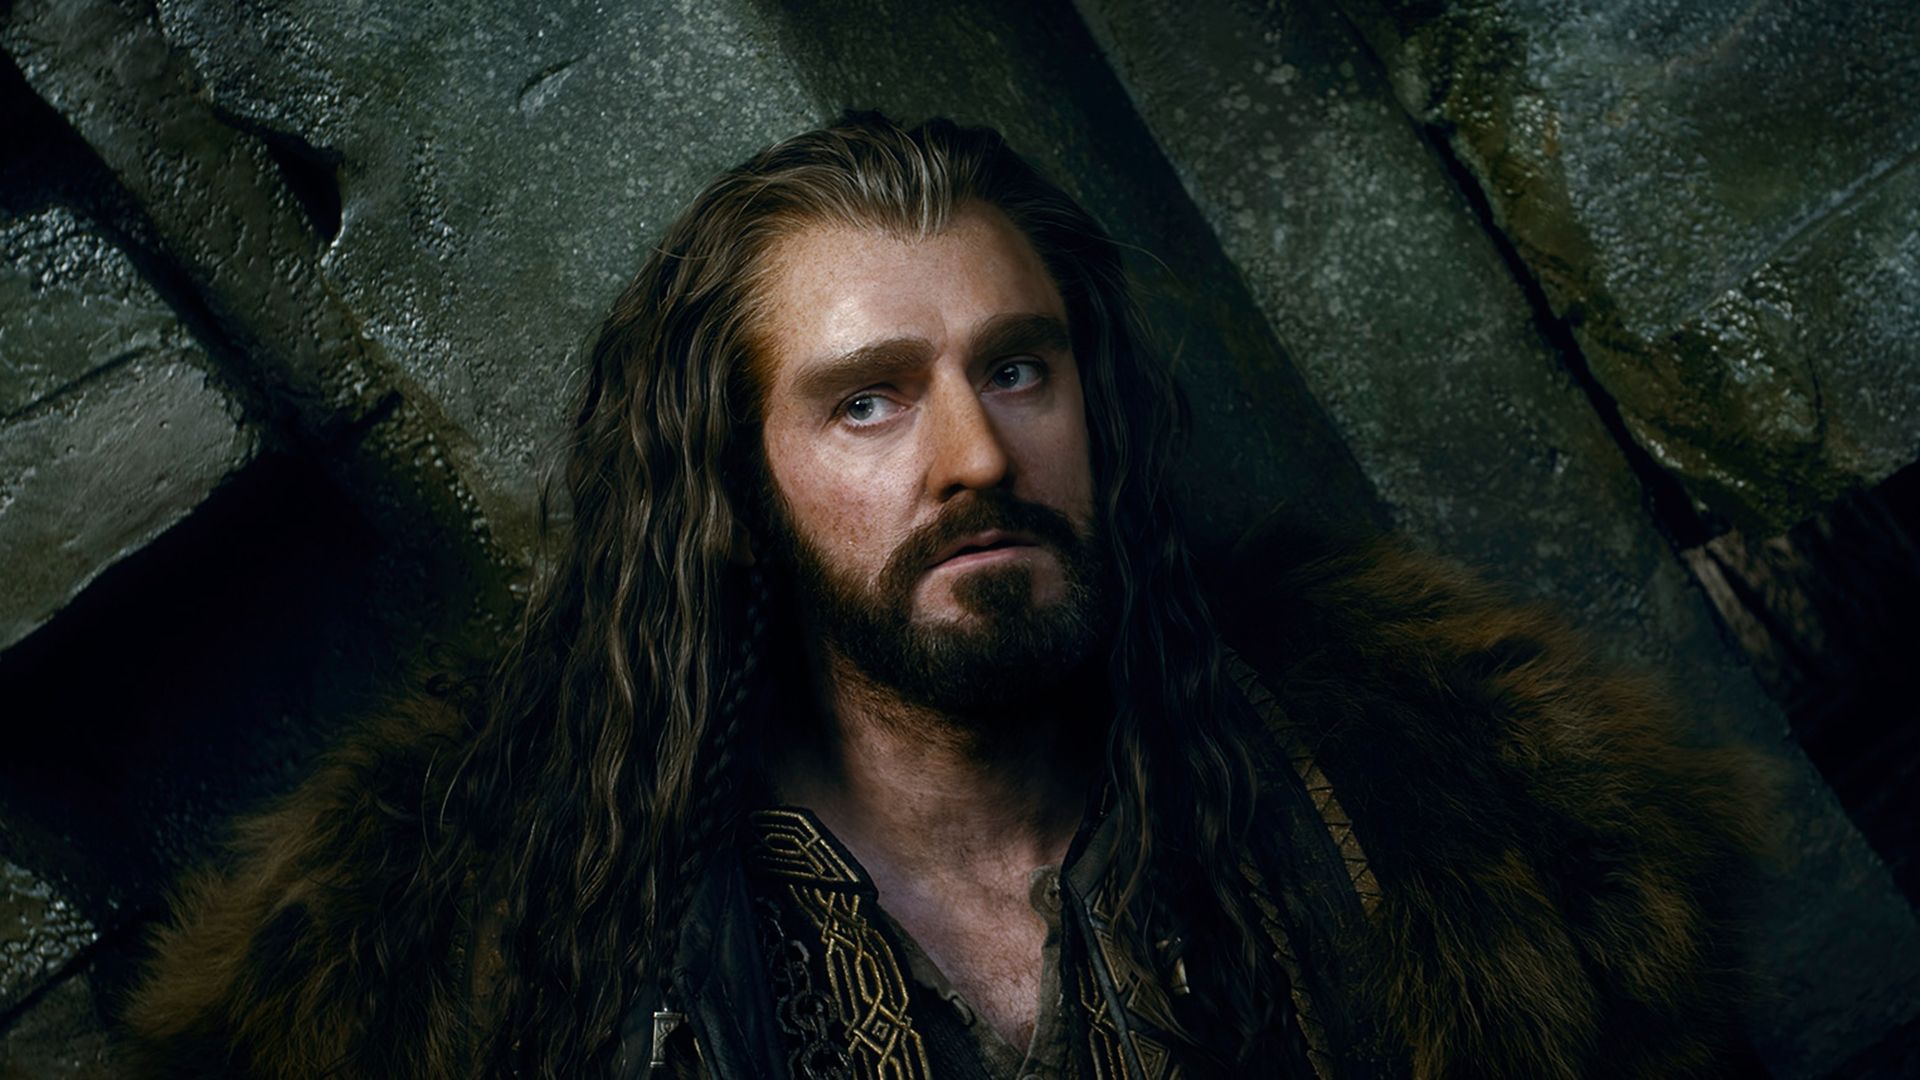 Richard Armitage as Thorin Oakenshield 